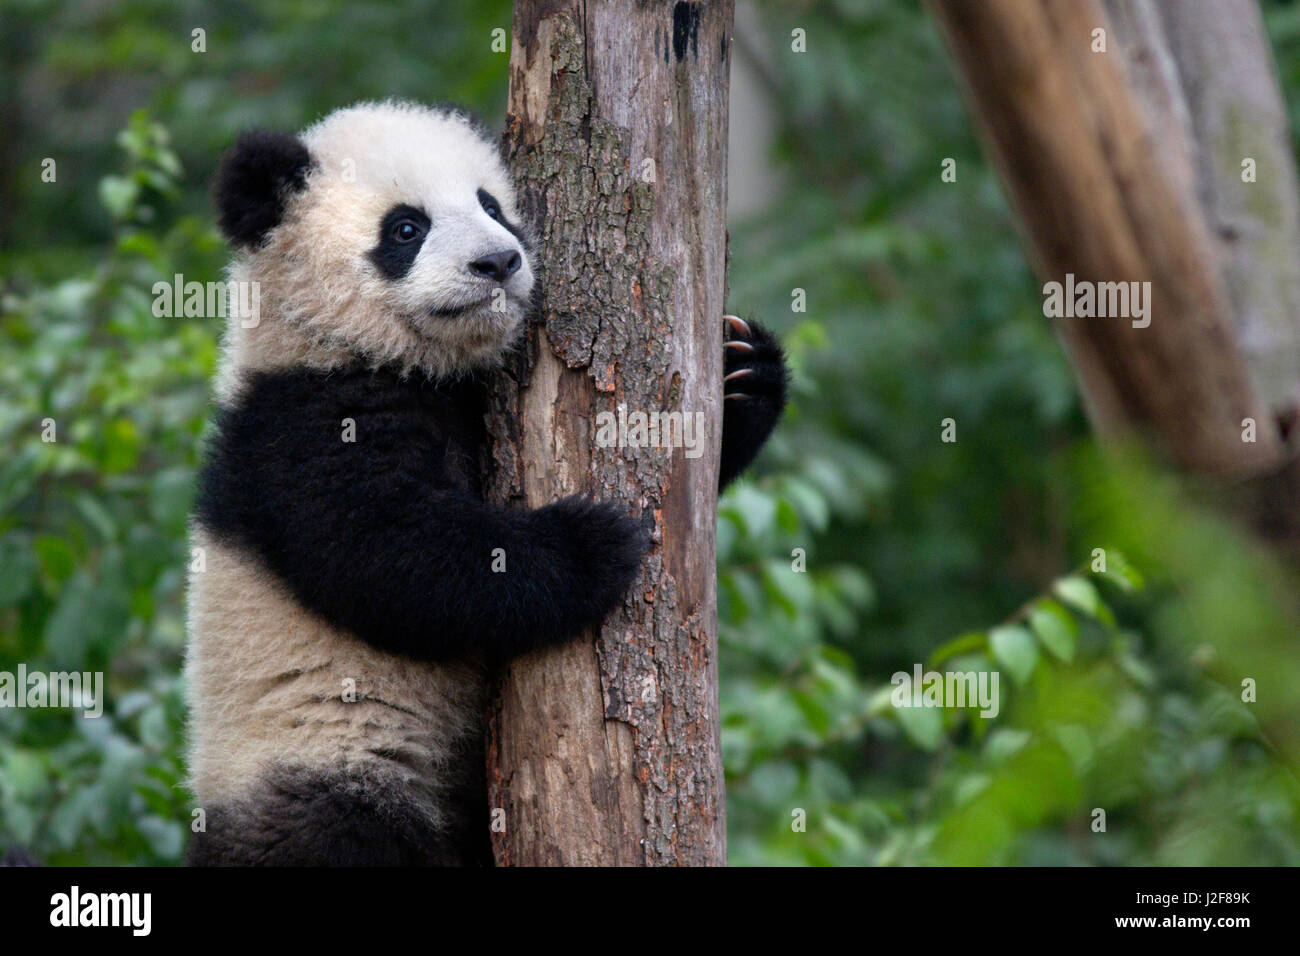 Bambino piccolo panda gigante di arrampicata in una struttura ad albero Foto Stock